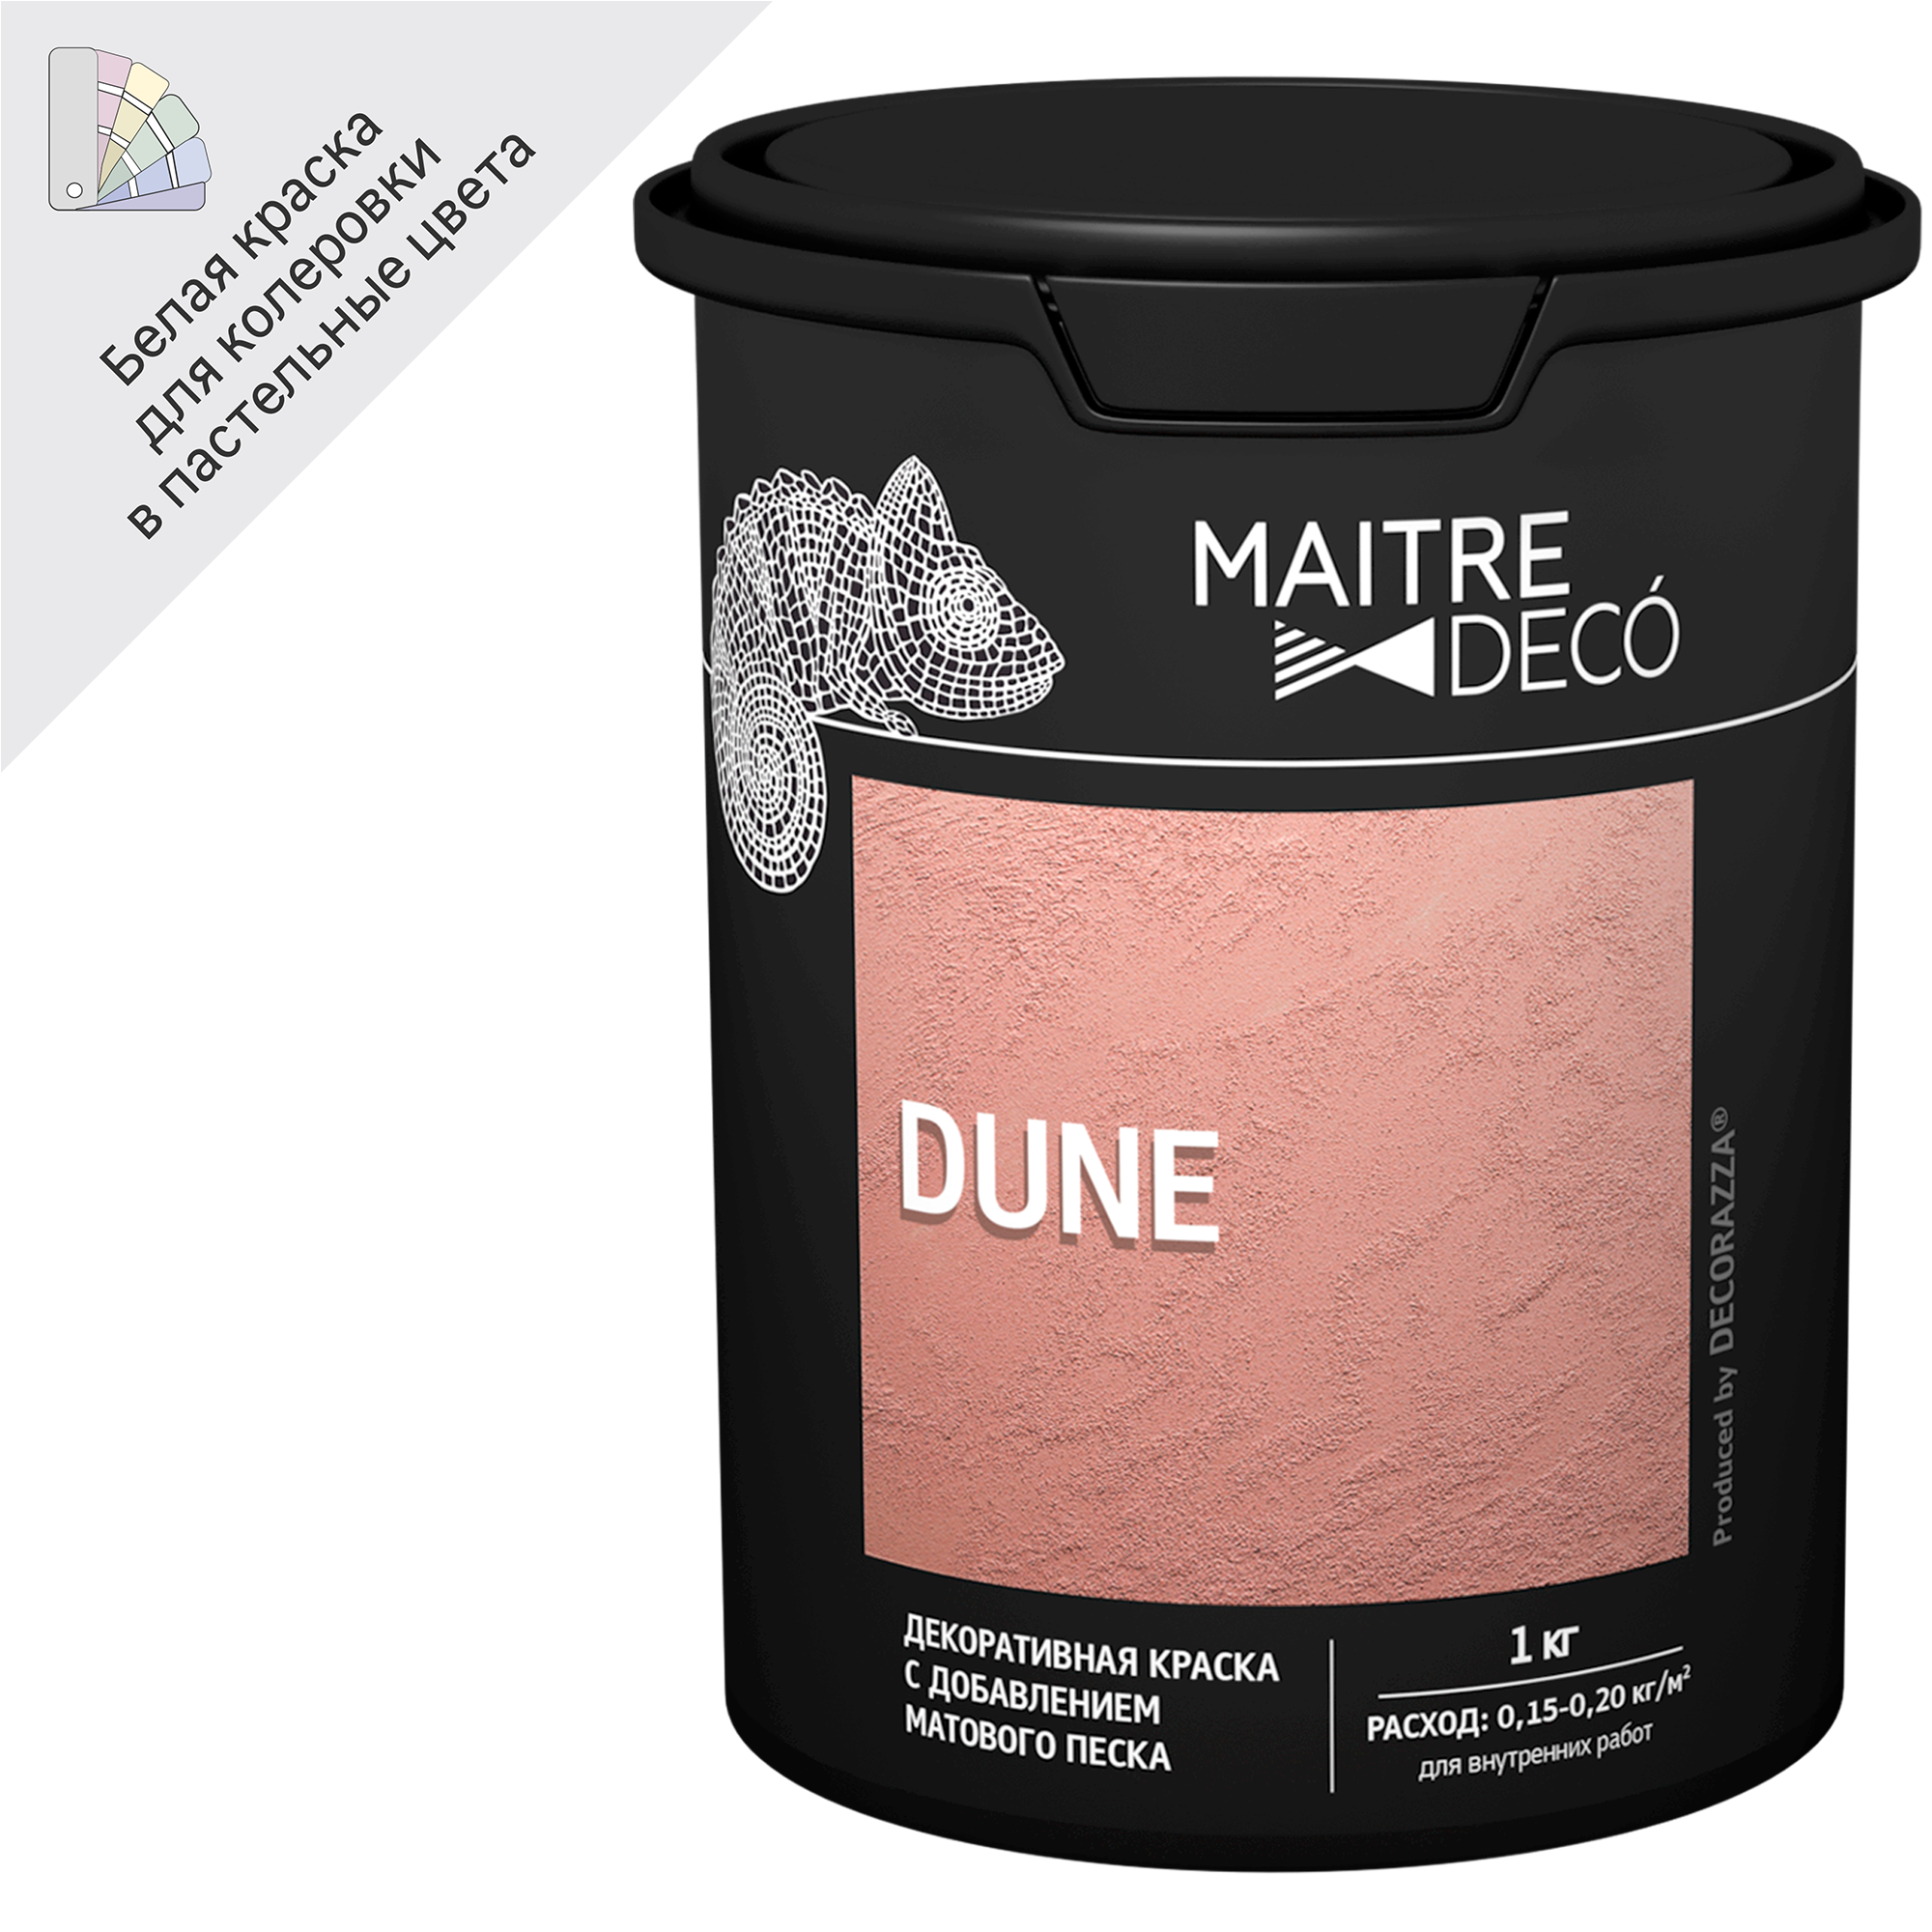 89149797 Краска декоративная Dune 1 кг цвет белый STLM-0079129 MAITRE DECO